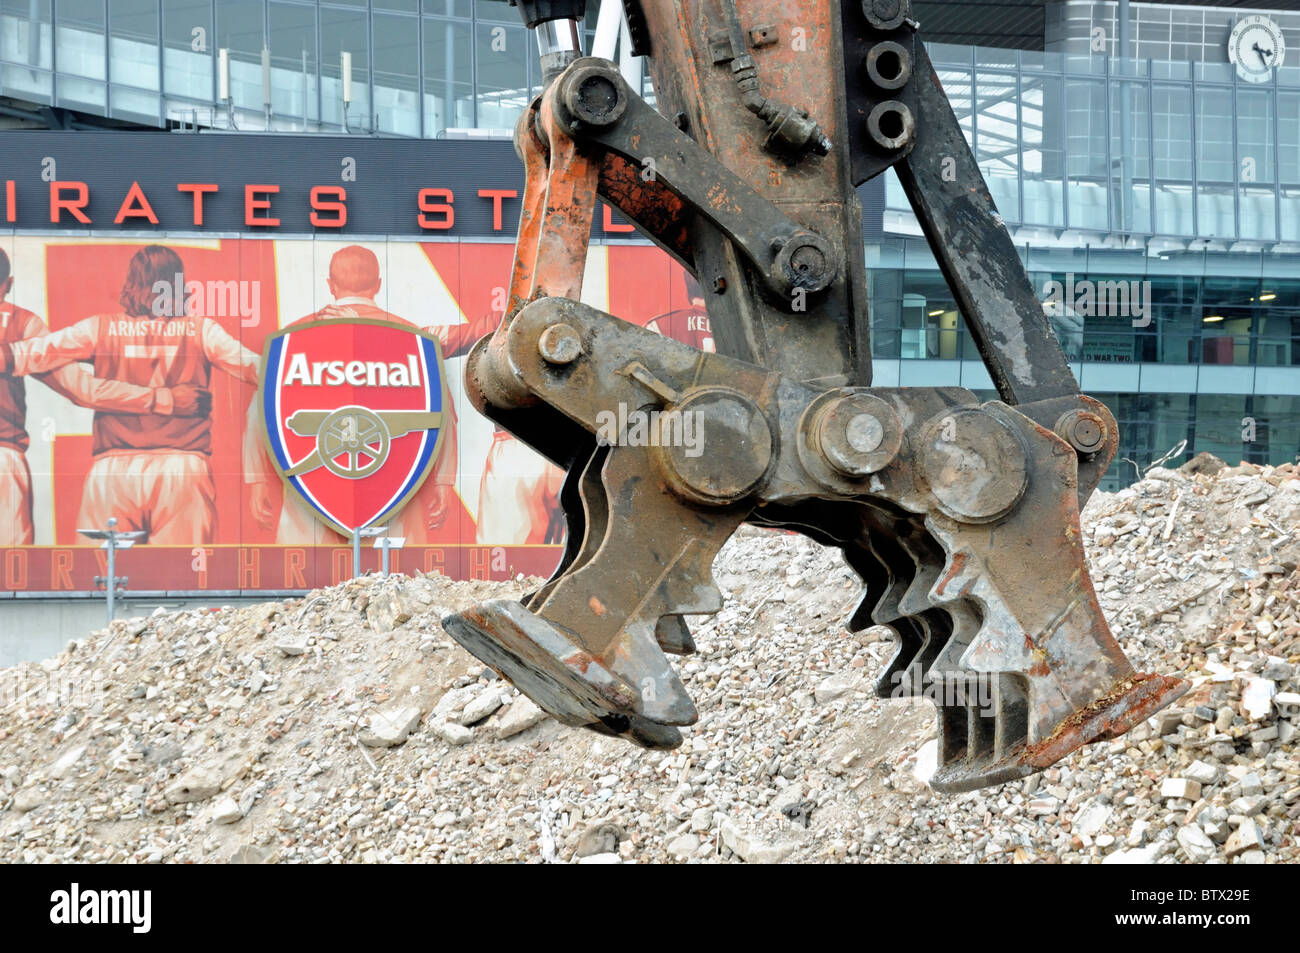 Abbruchstelle mit Pulverisator, Abbruchwerkzeug mit Arsenal Schild auf dem Emirates Stadium im Hintergrund Holloway London England UK Stockfoto